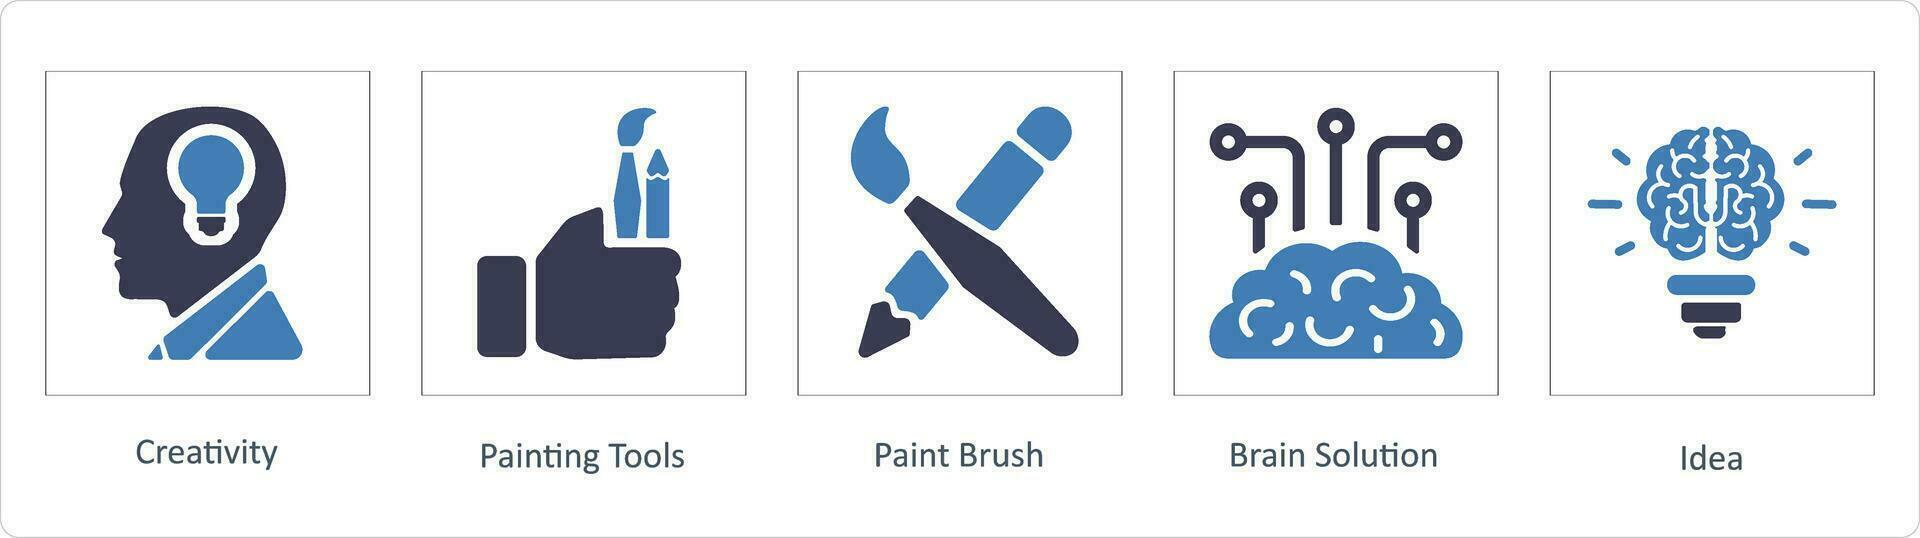 creatividad, pintura herramientas icono concepto vector